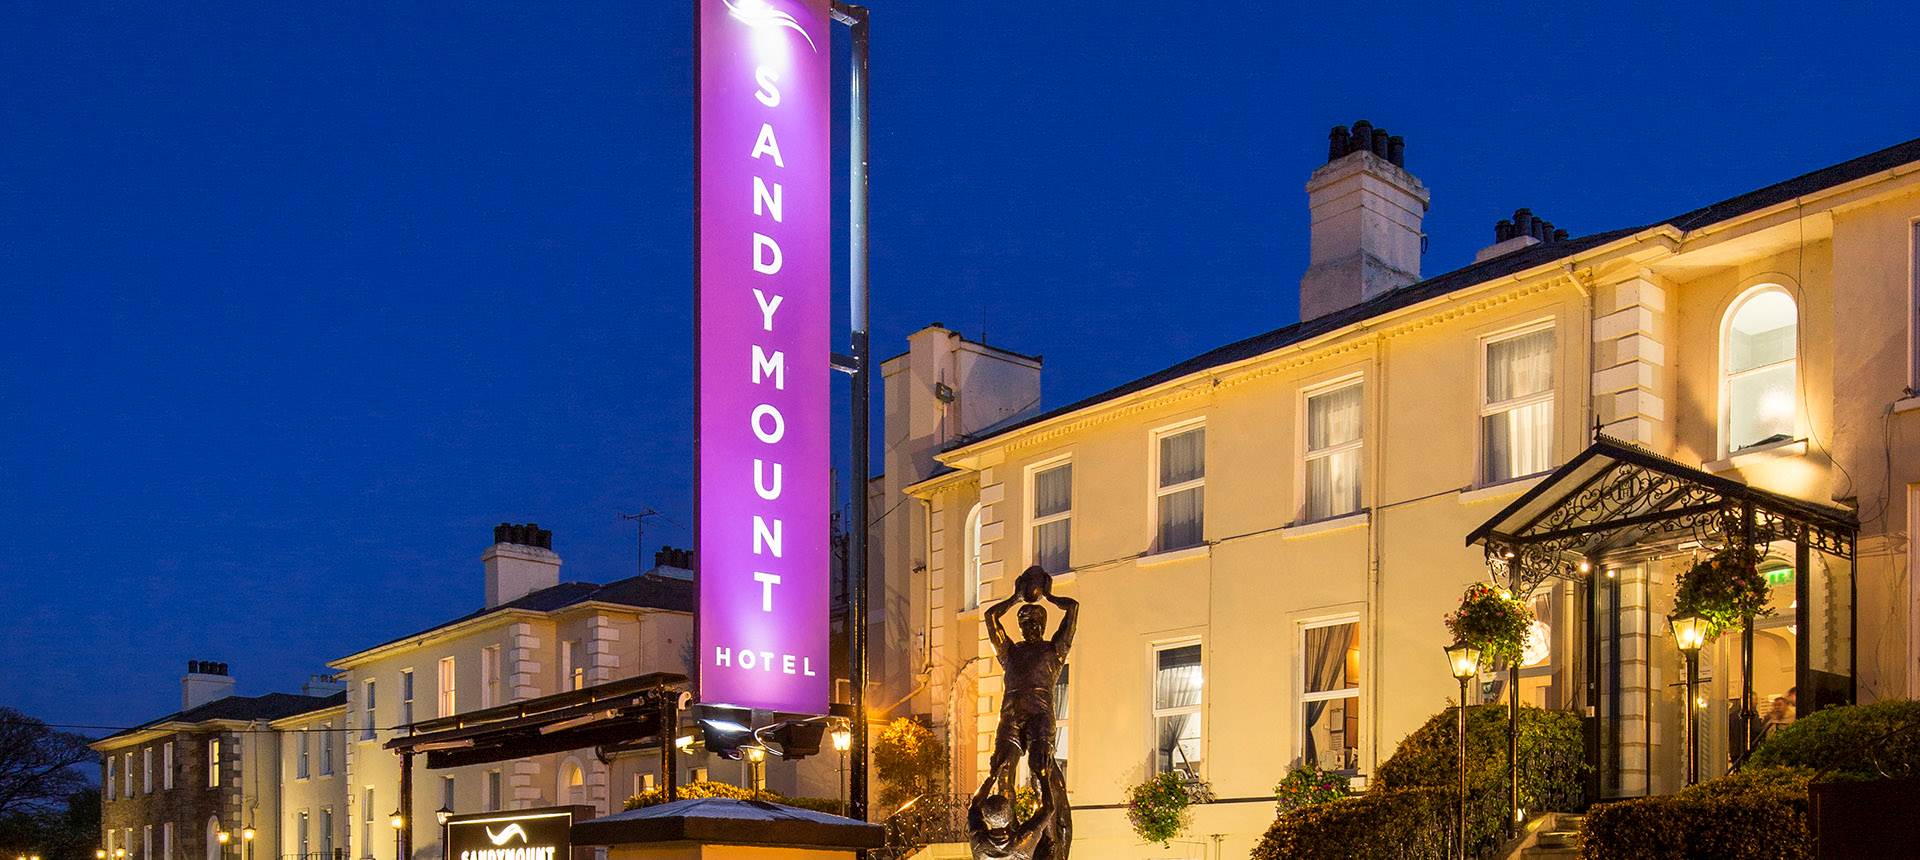 Sandymount Hotel in Dublin